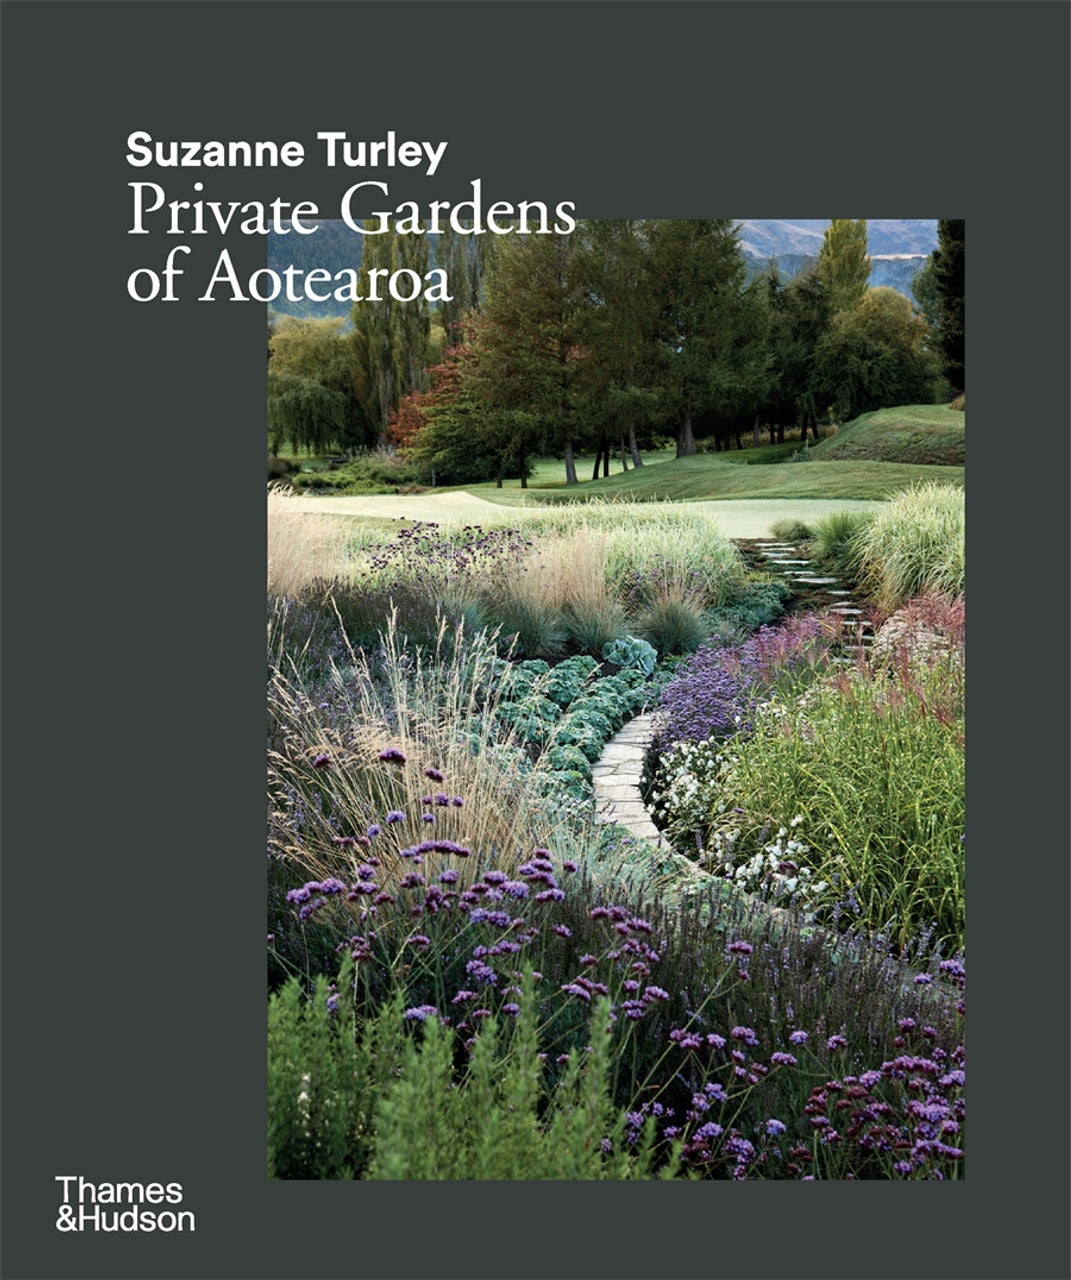 PRIVATE GARDENS OF AOTEAROA - SUZANNE TURLEY